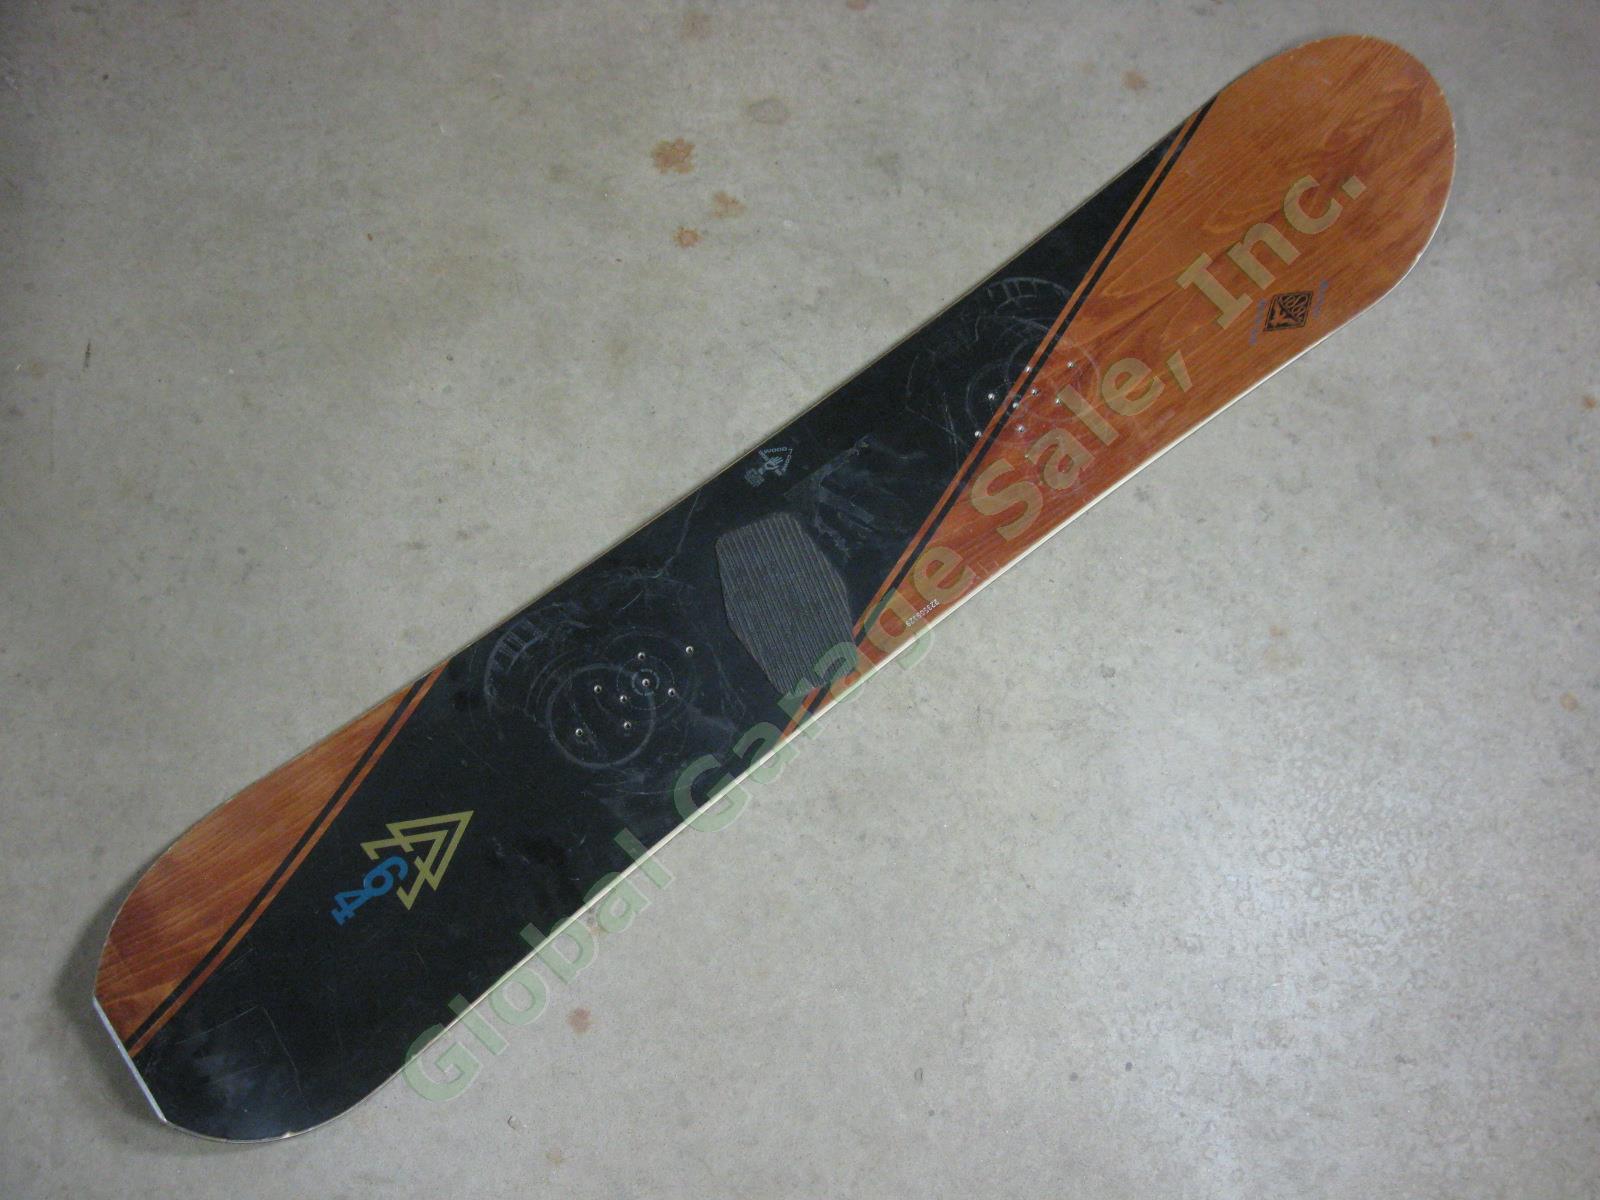 Vintage 1995 Burton Asym Air 164 Goofy Foot Asymmetrical Snowboard 